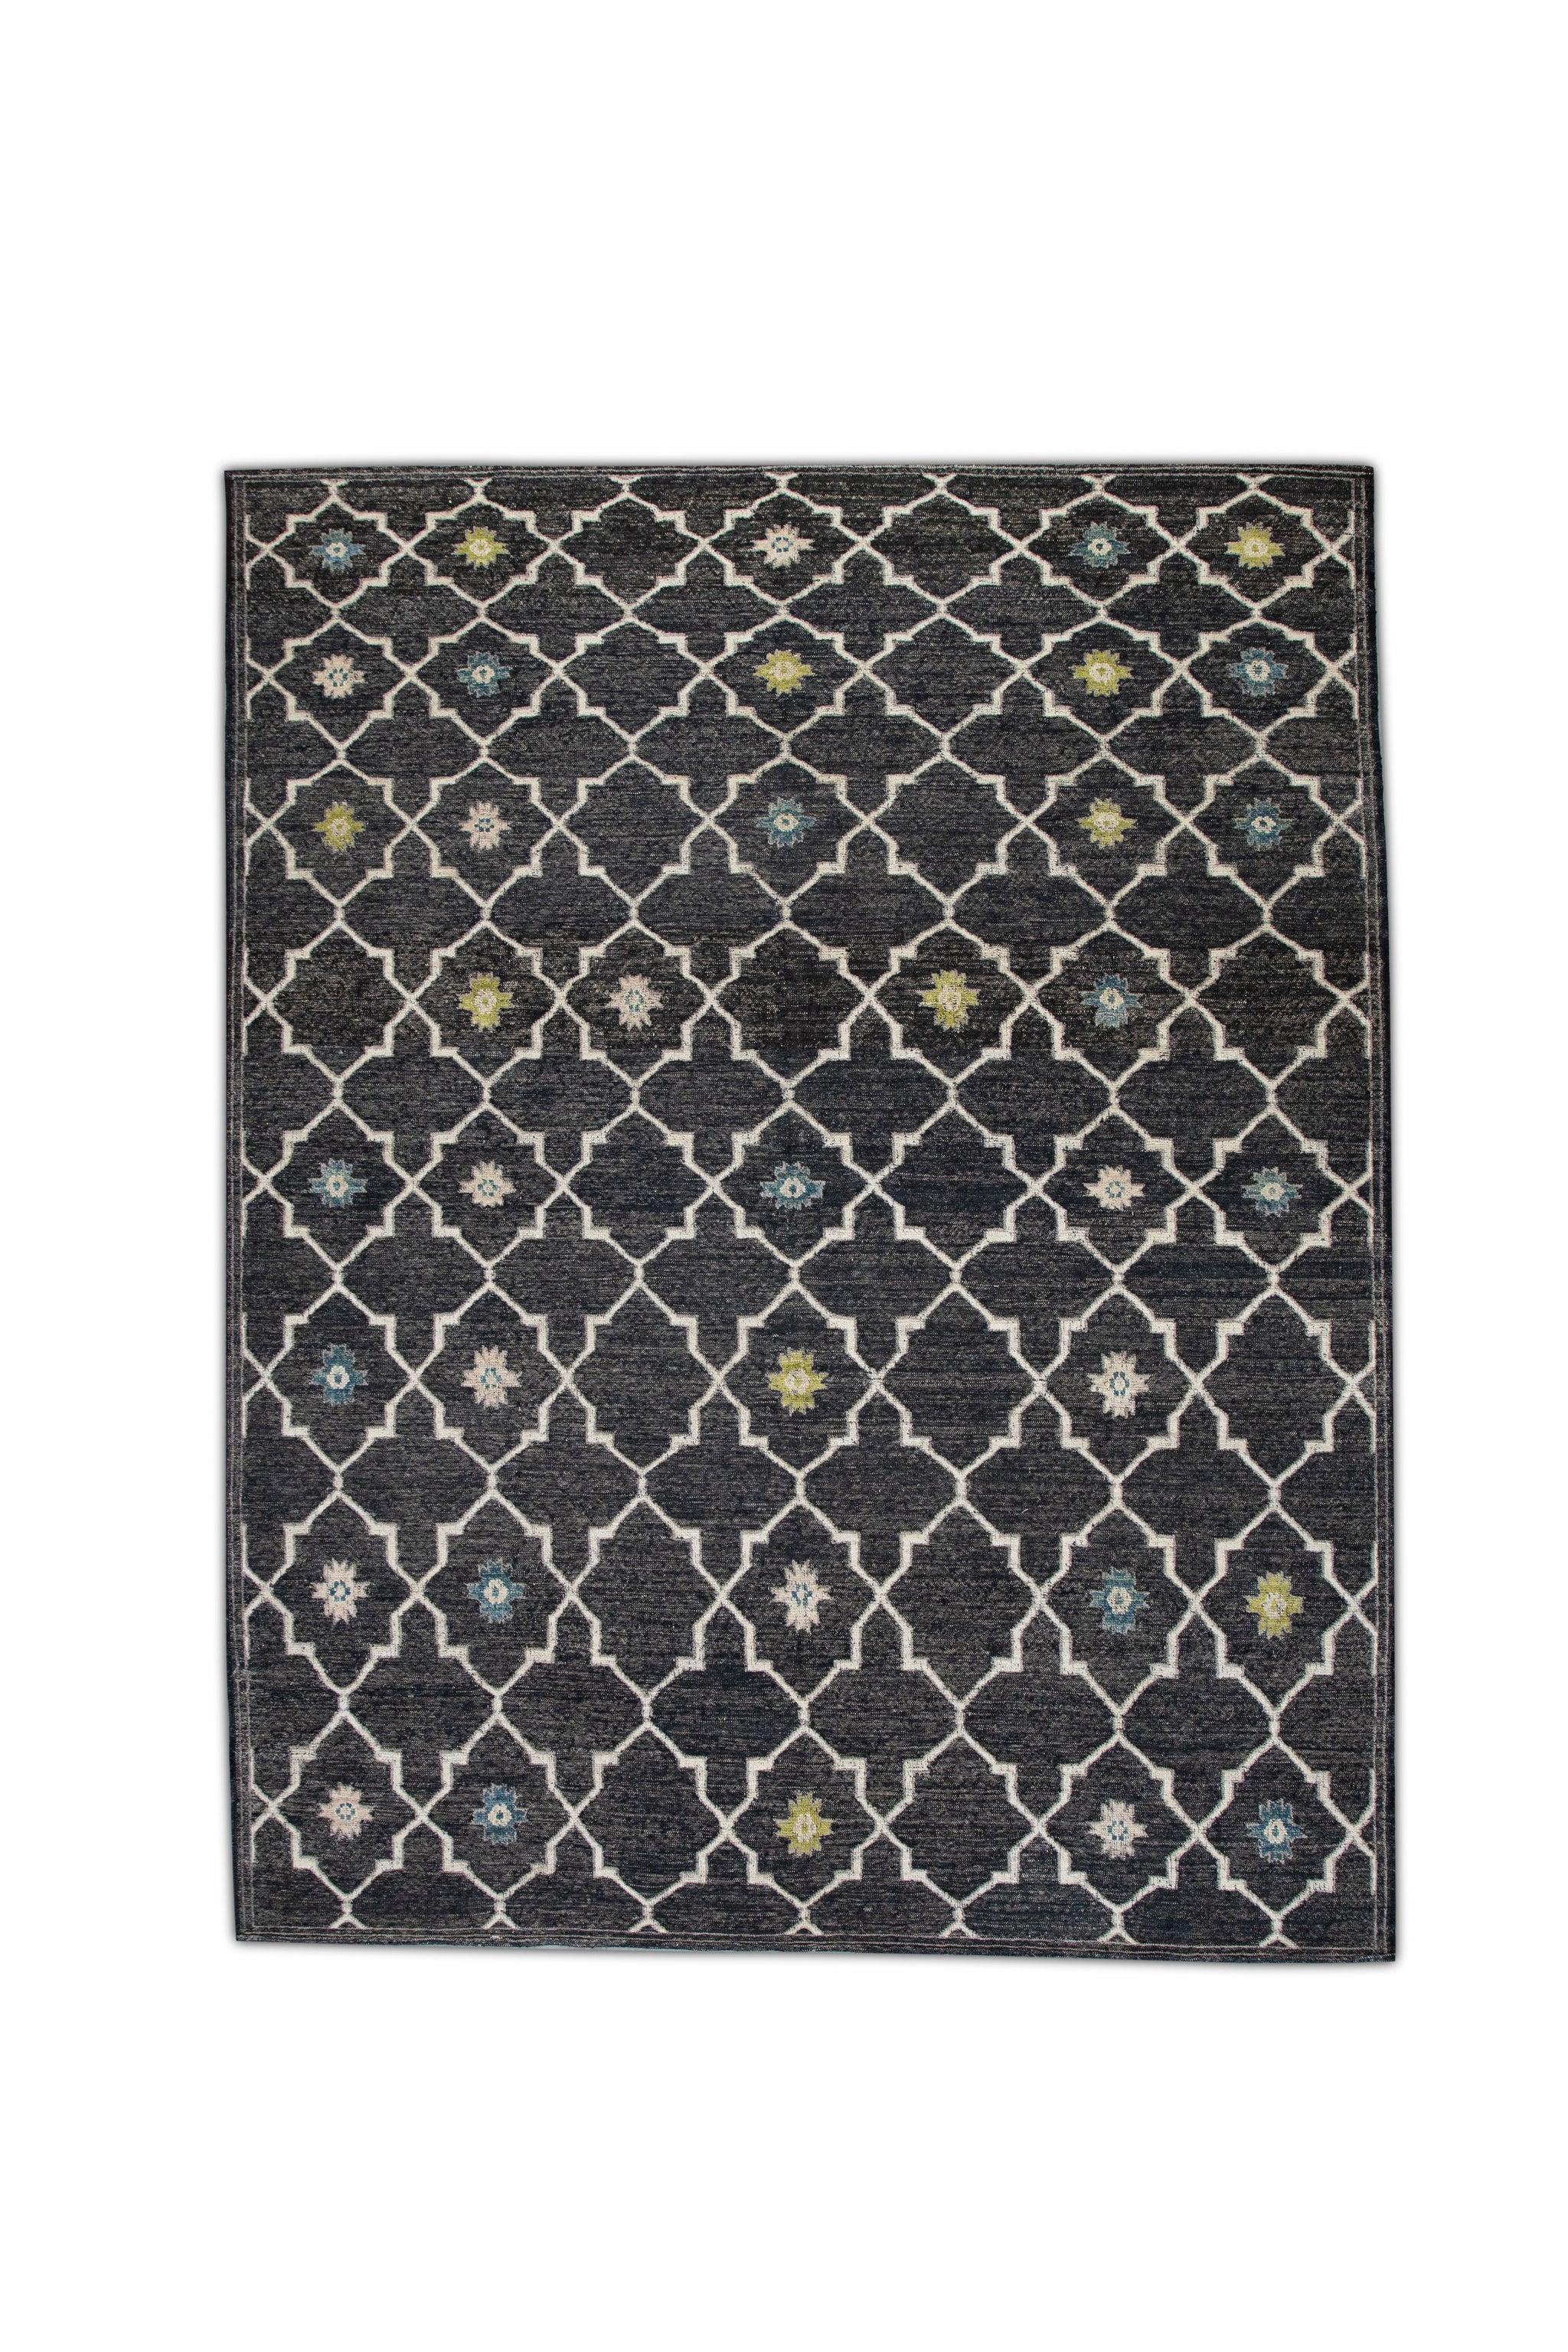 Charcoal Flatweave Handmade Wool Rug in Blue & Green Geometric Design 10' X 12'4 For Sale 3